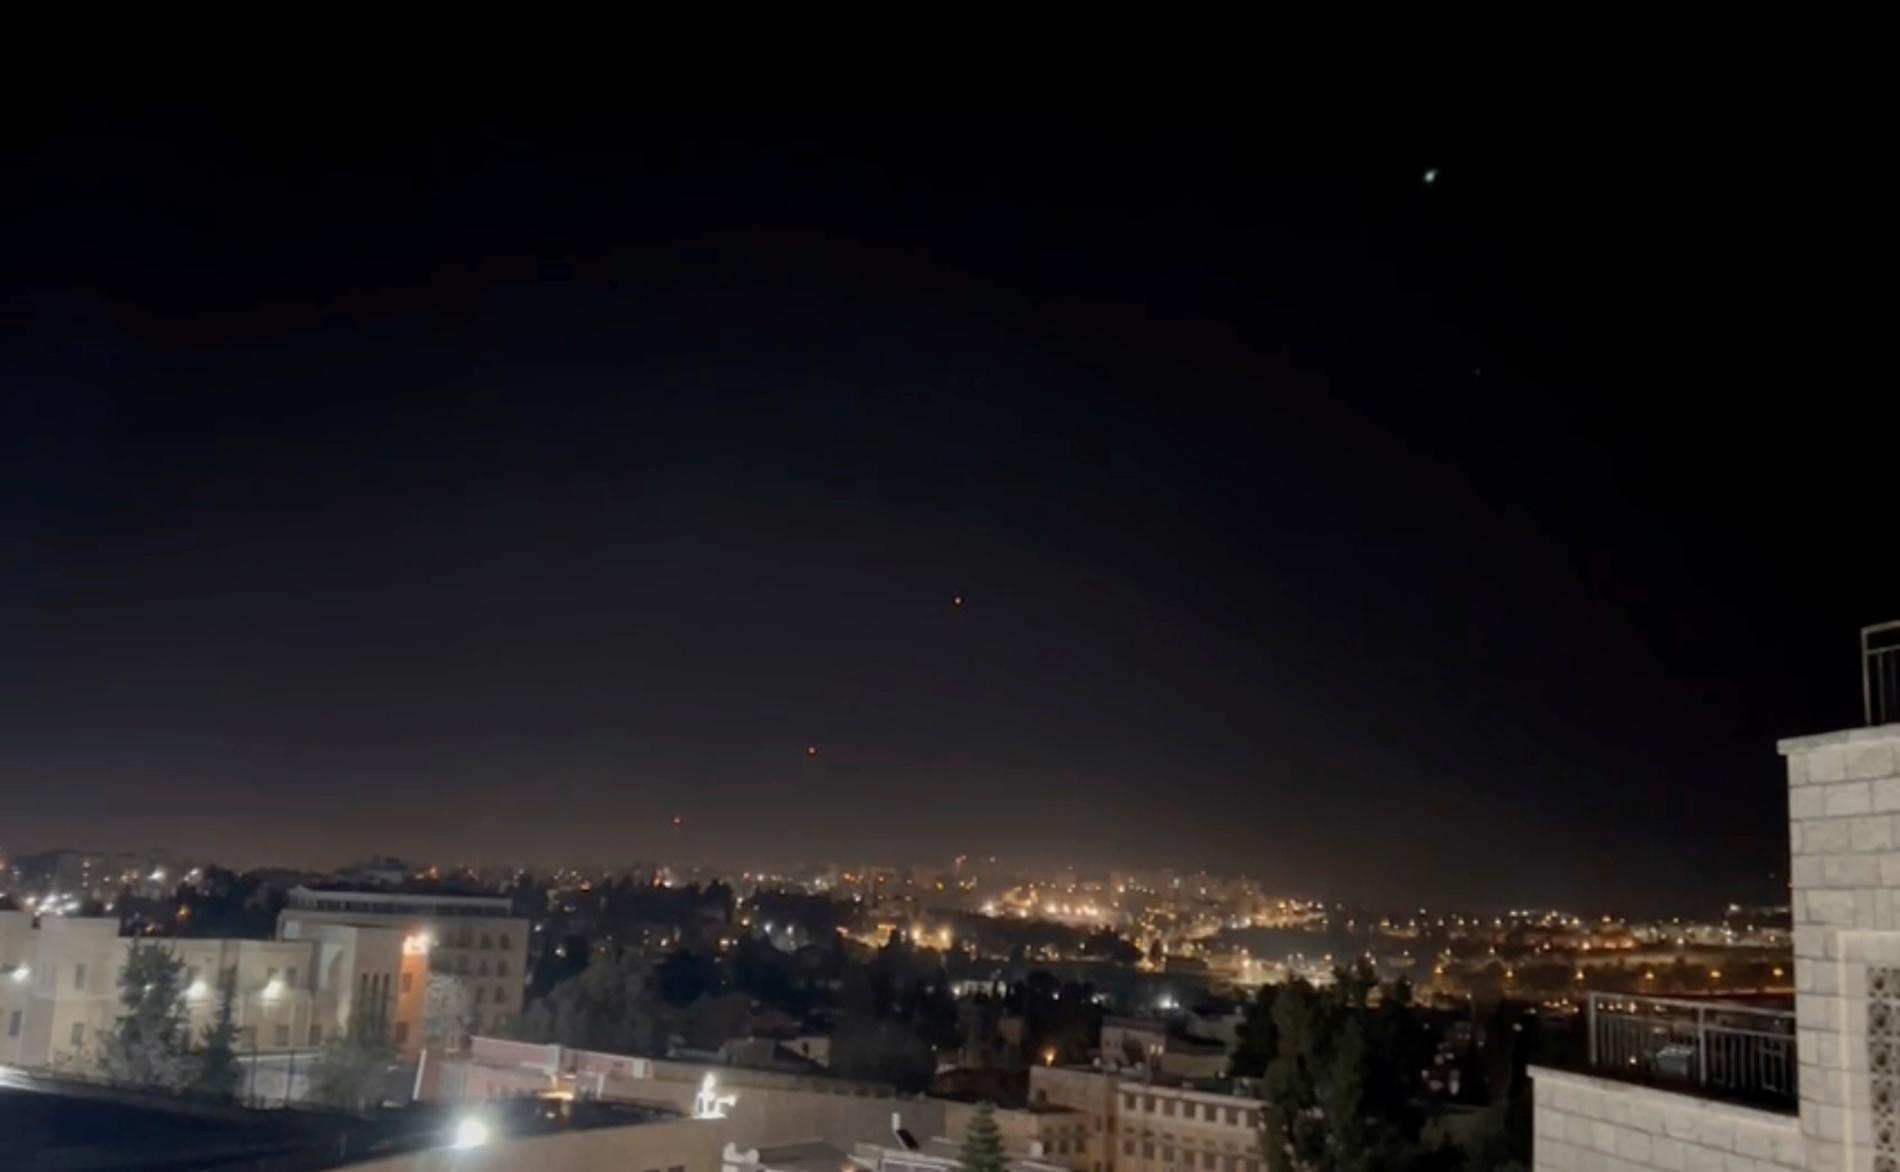 Det israeliska luftvärnssystemet Iron Dome skjuter moteld mot inkommande objekt över Jerusalem under natten mot söndagen.